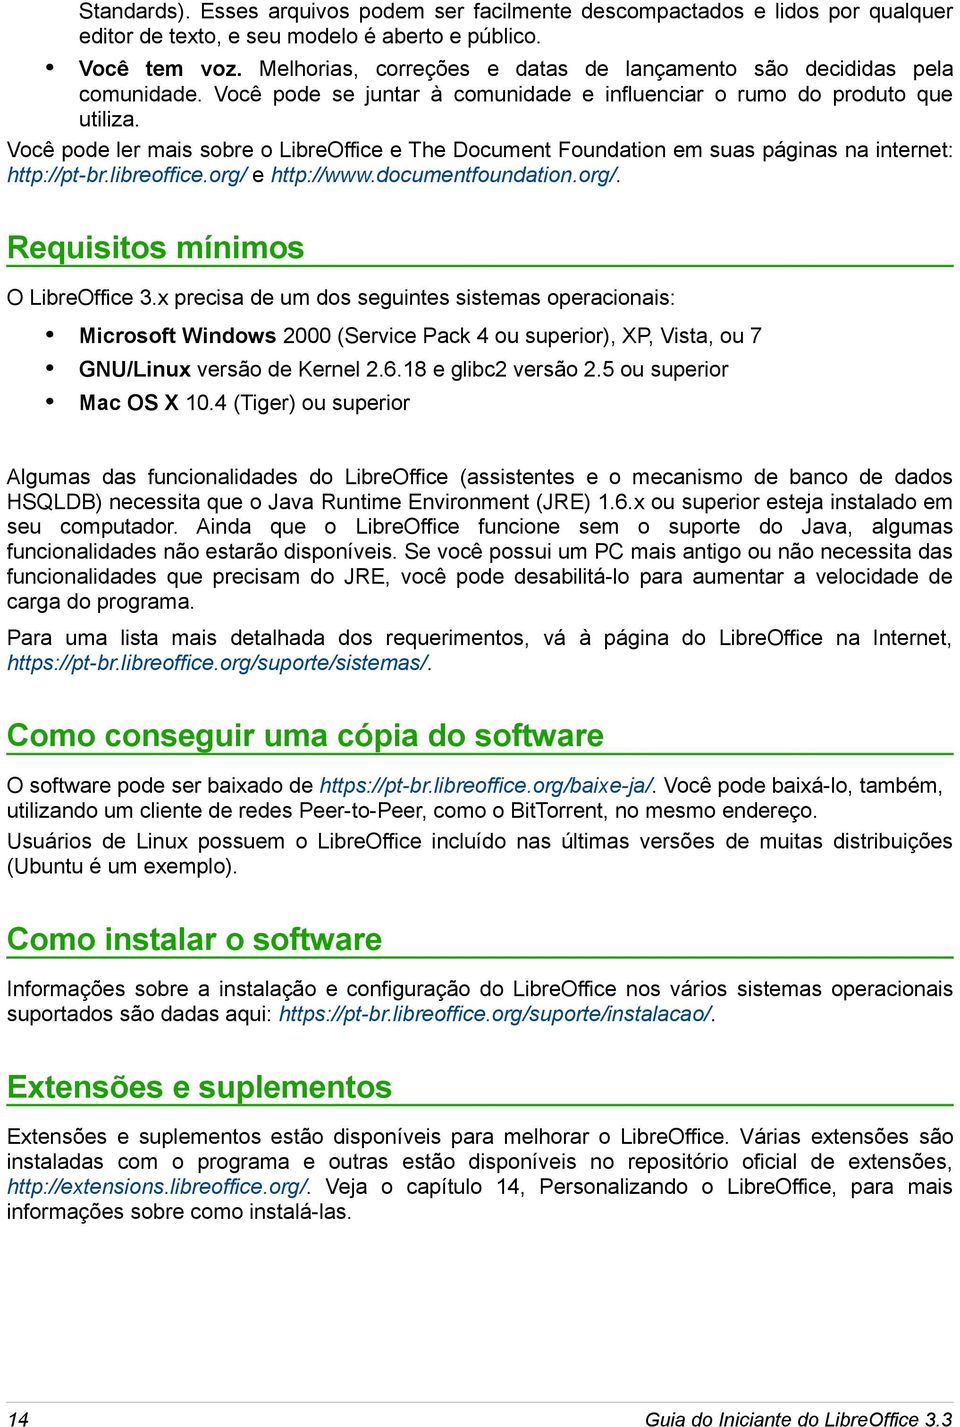 Você pode ler mais sobre o LibreOffice e The Document Foundation em suas páginas na internet: http://pt-br.libreoffice.org/ e http://www.documentfoundation.org/. Requisitos mínimos O LibreOffice 3.